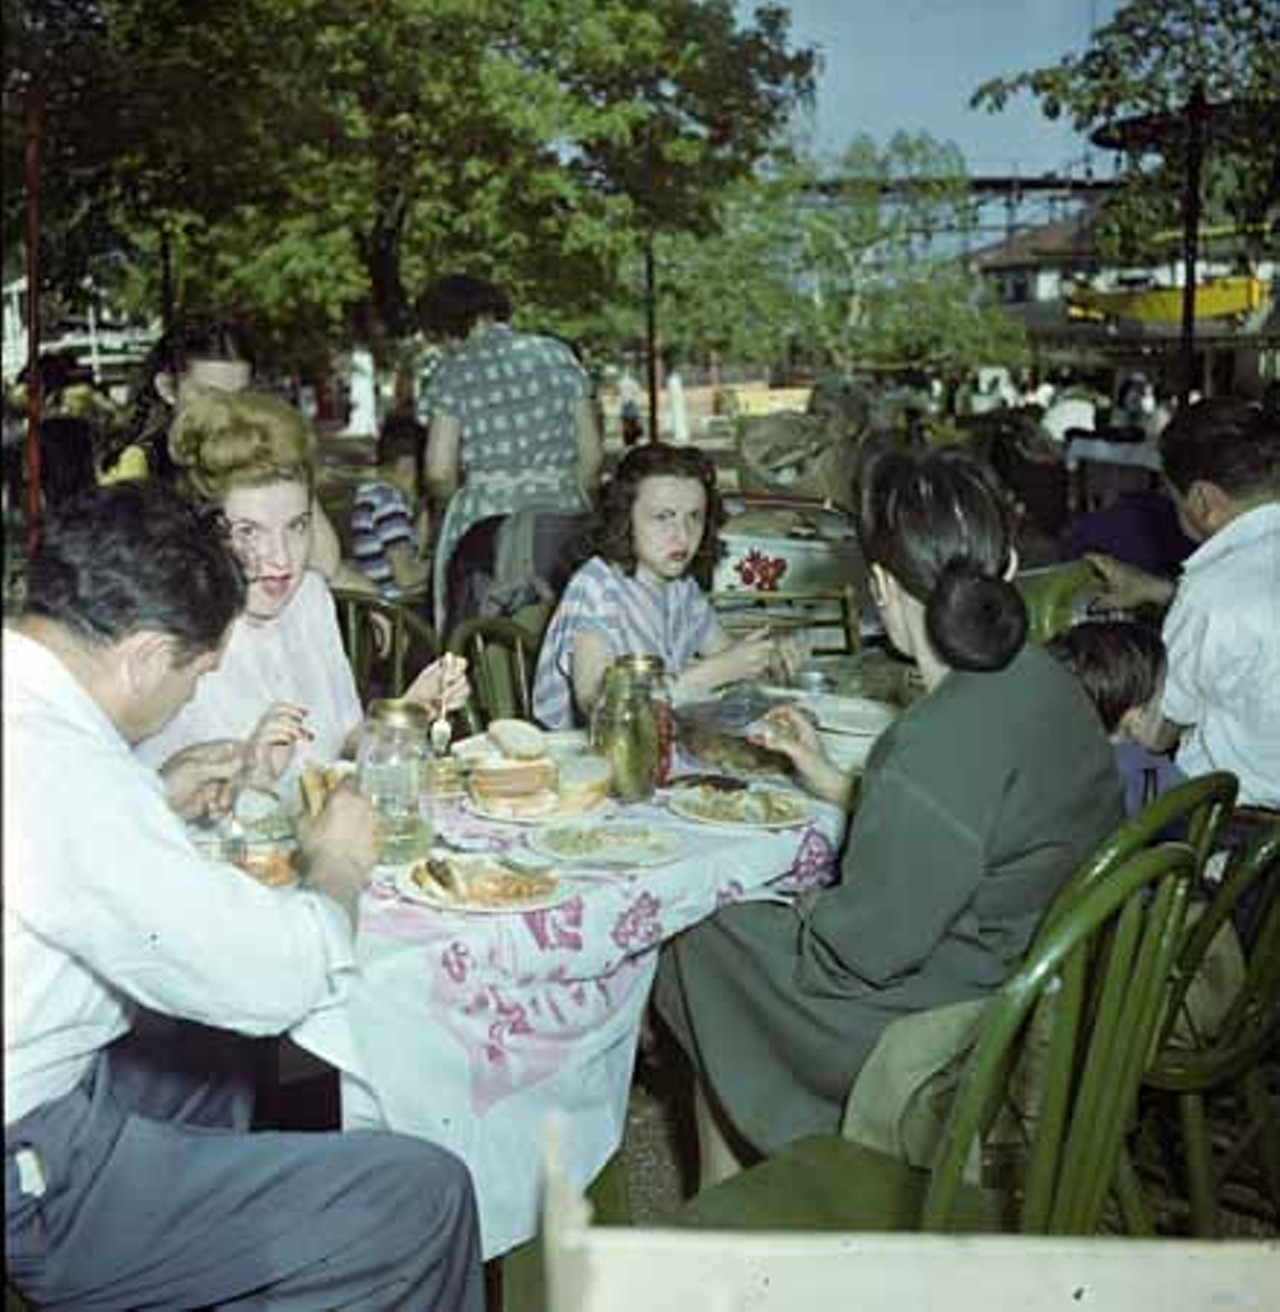 1947. Kicking back at a picnic.